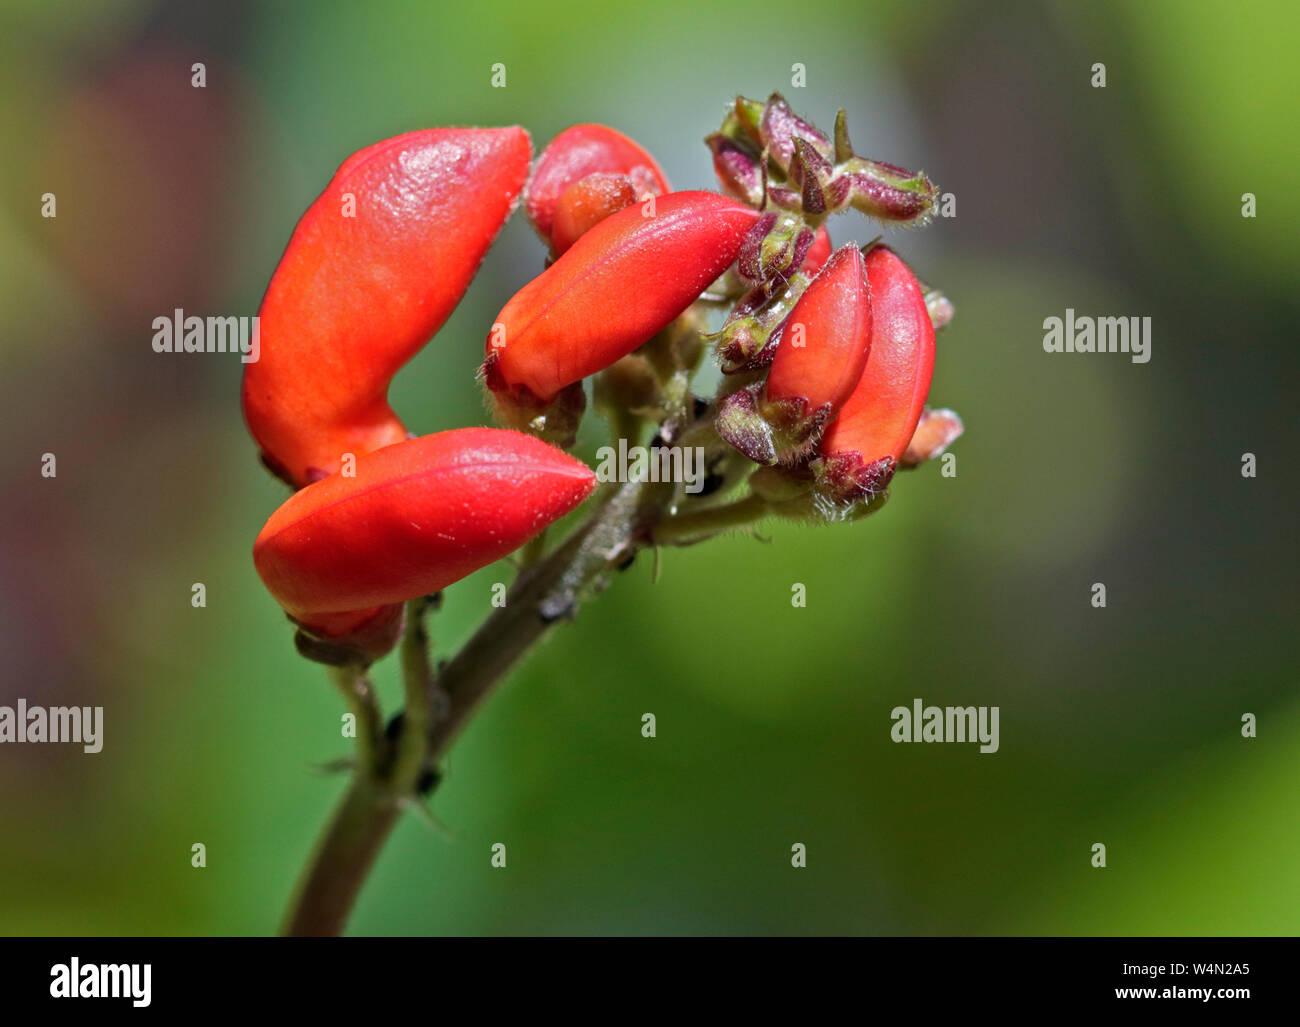 Runner Bean Flower, of the variety Benchmaster Stock Photo